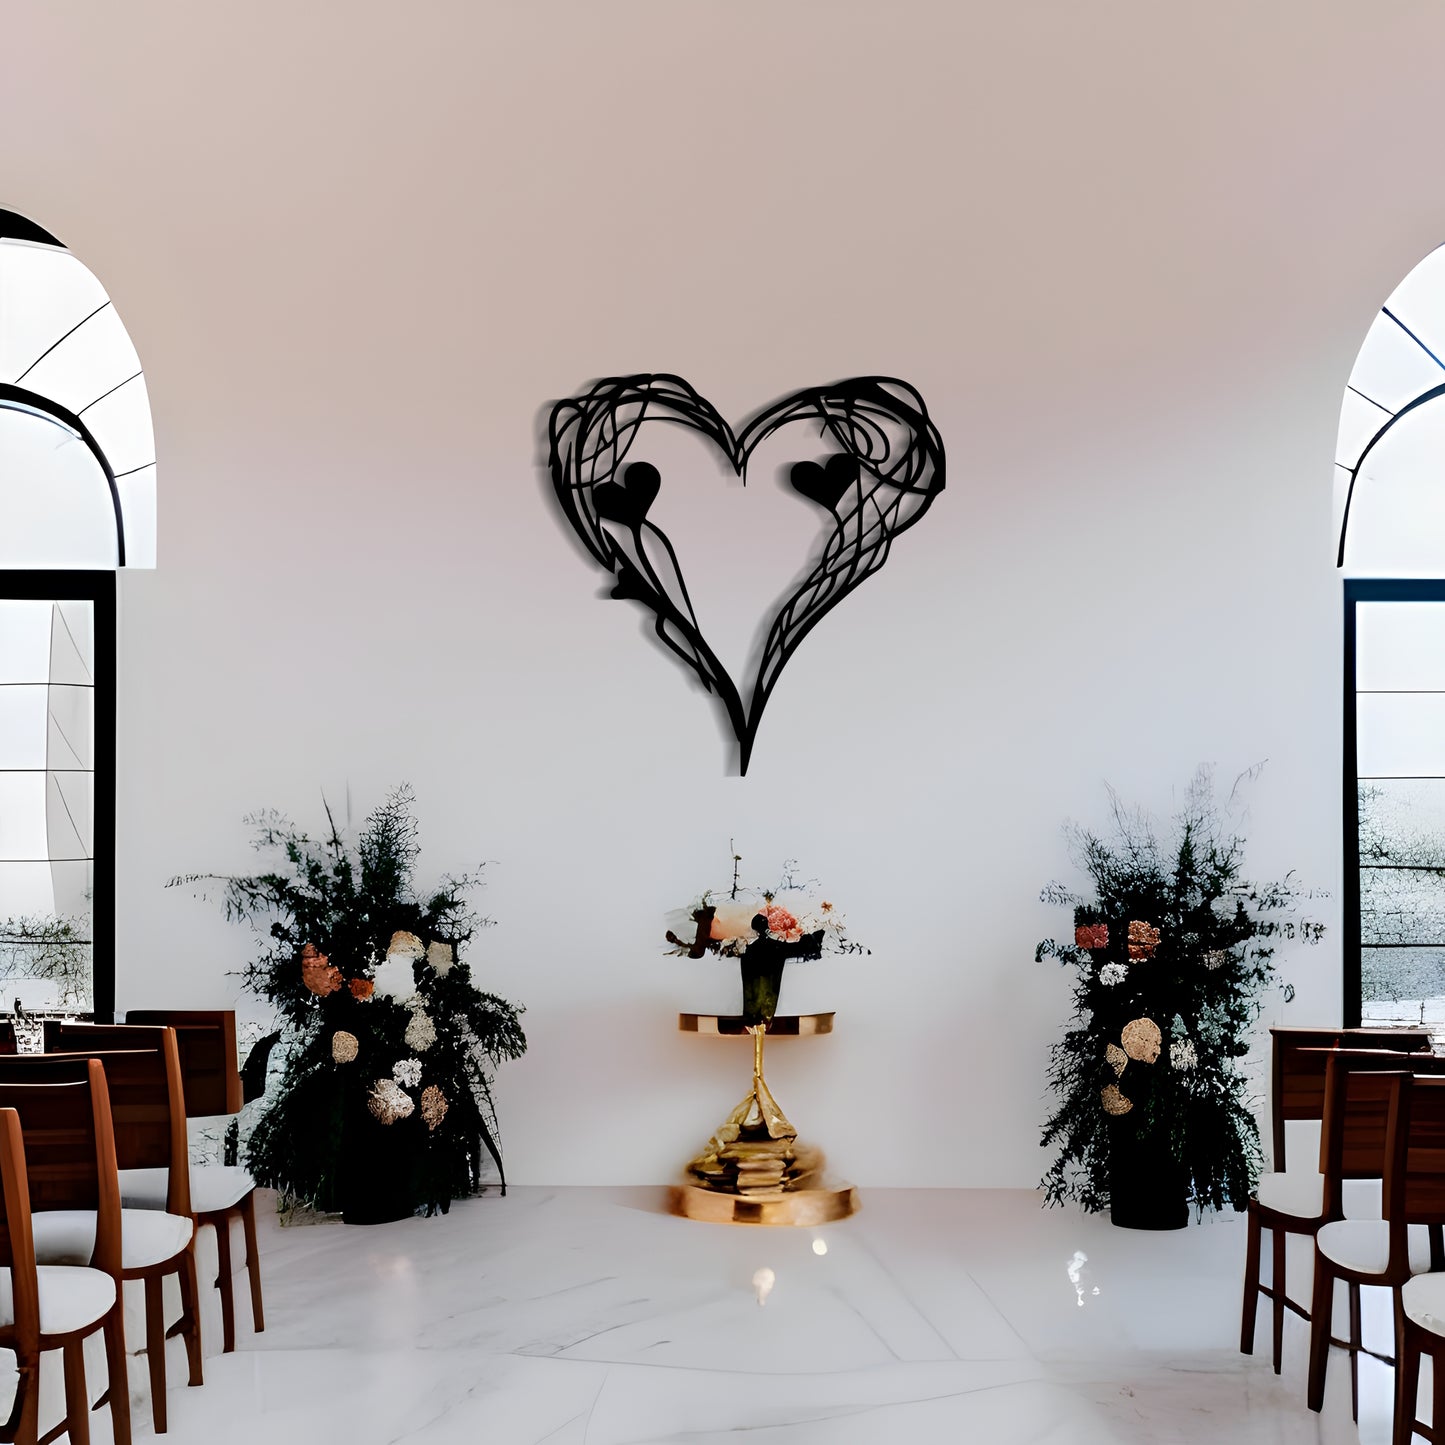 Romantic Heart-Shaped Wall Decor